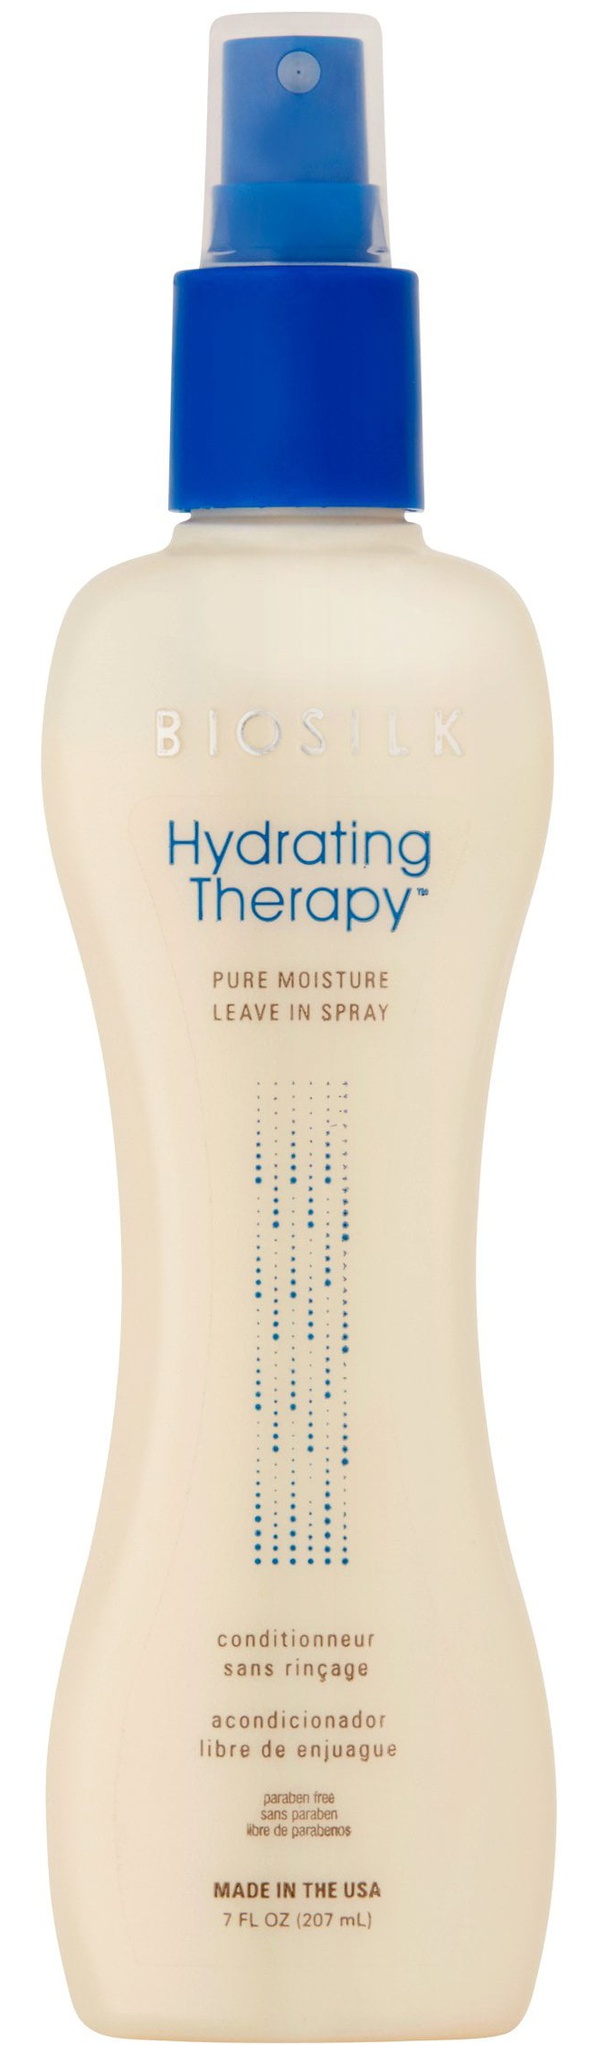 BIOSILK Hydrating Therapy Pure Moisture Leave-in Conditioner Spray